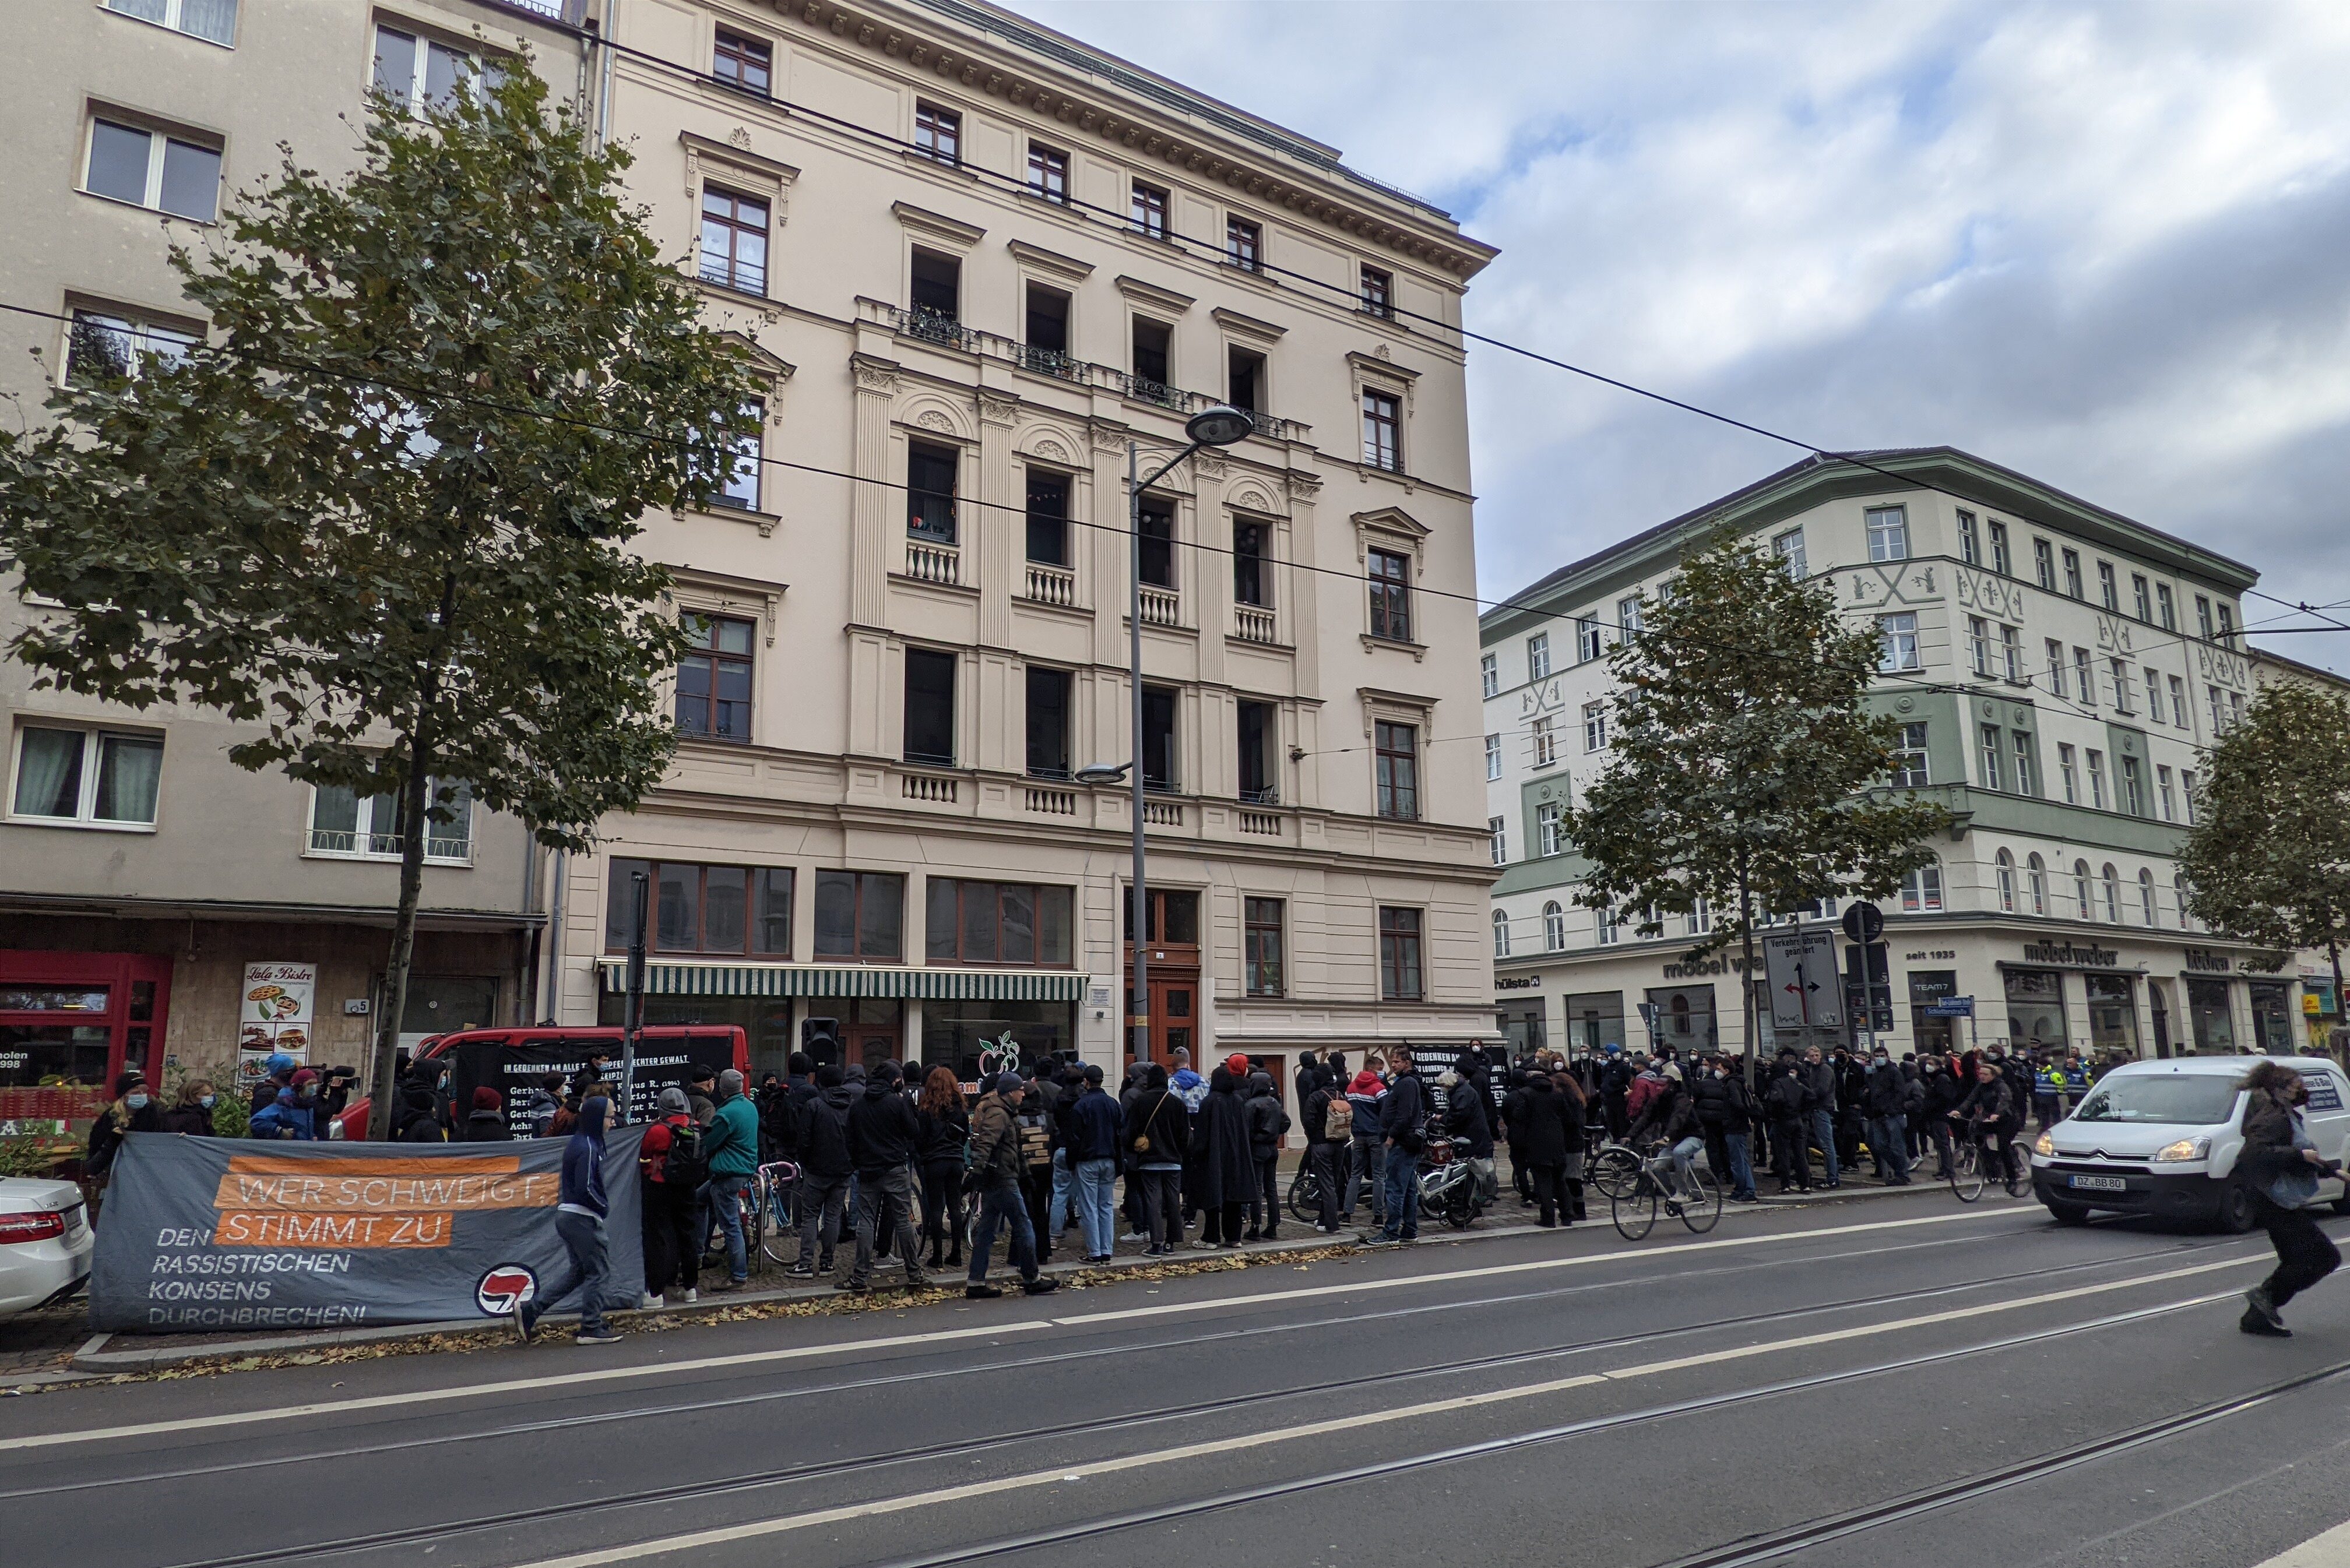   Leipziger Polizeifestspiele | Polizeilicher Ausnahmezustand in Leipzig trotz Demo-Verbot  